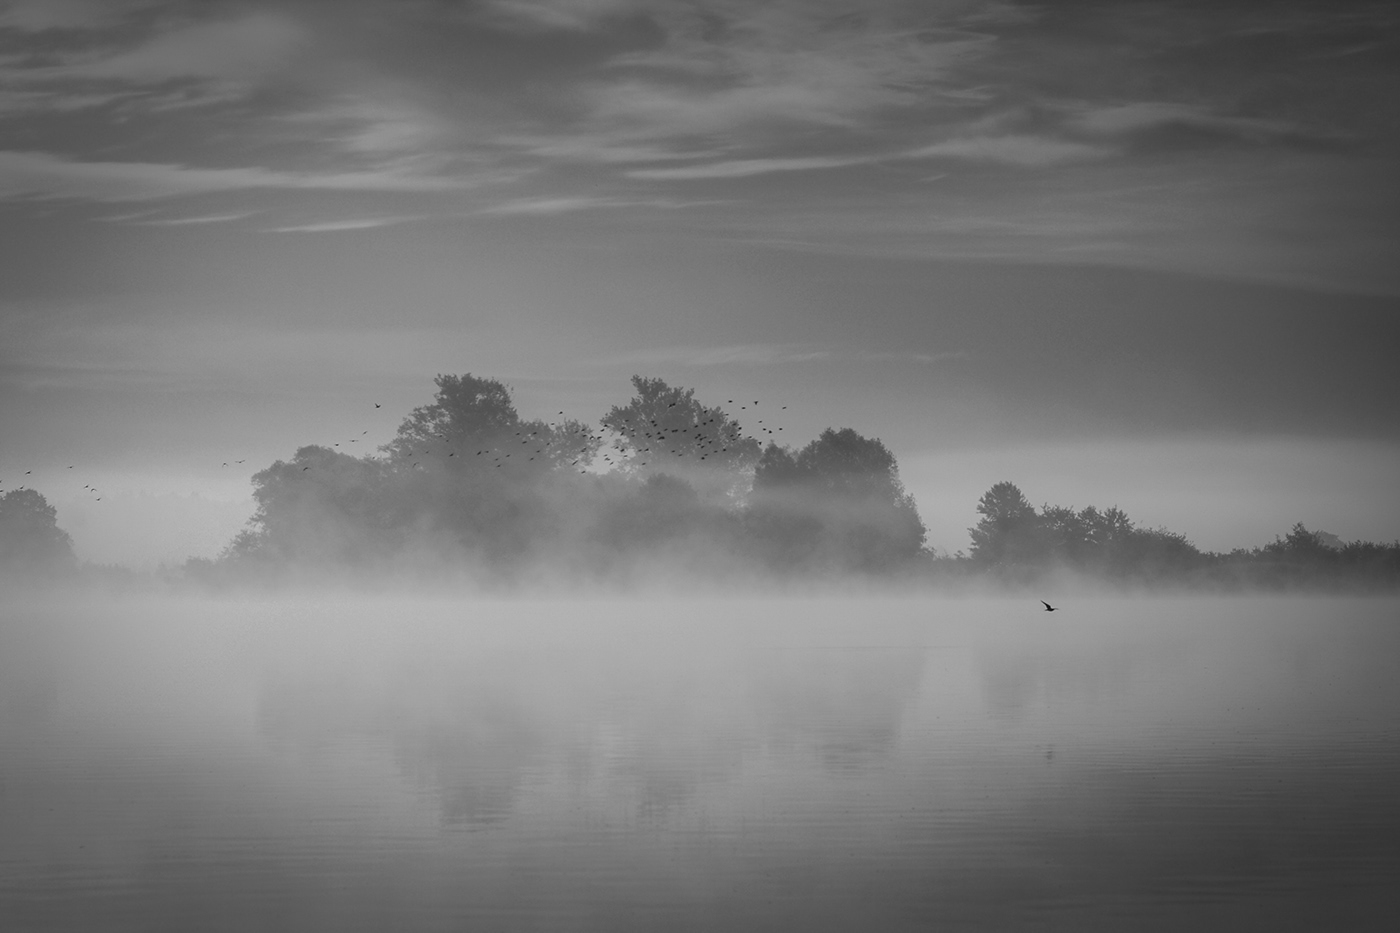 fog lietuva lithuania Memelland Mindaugas Buivydas minimal Minimalism mist river